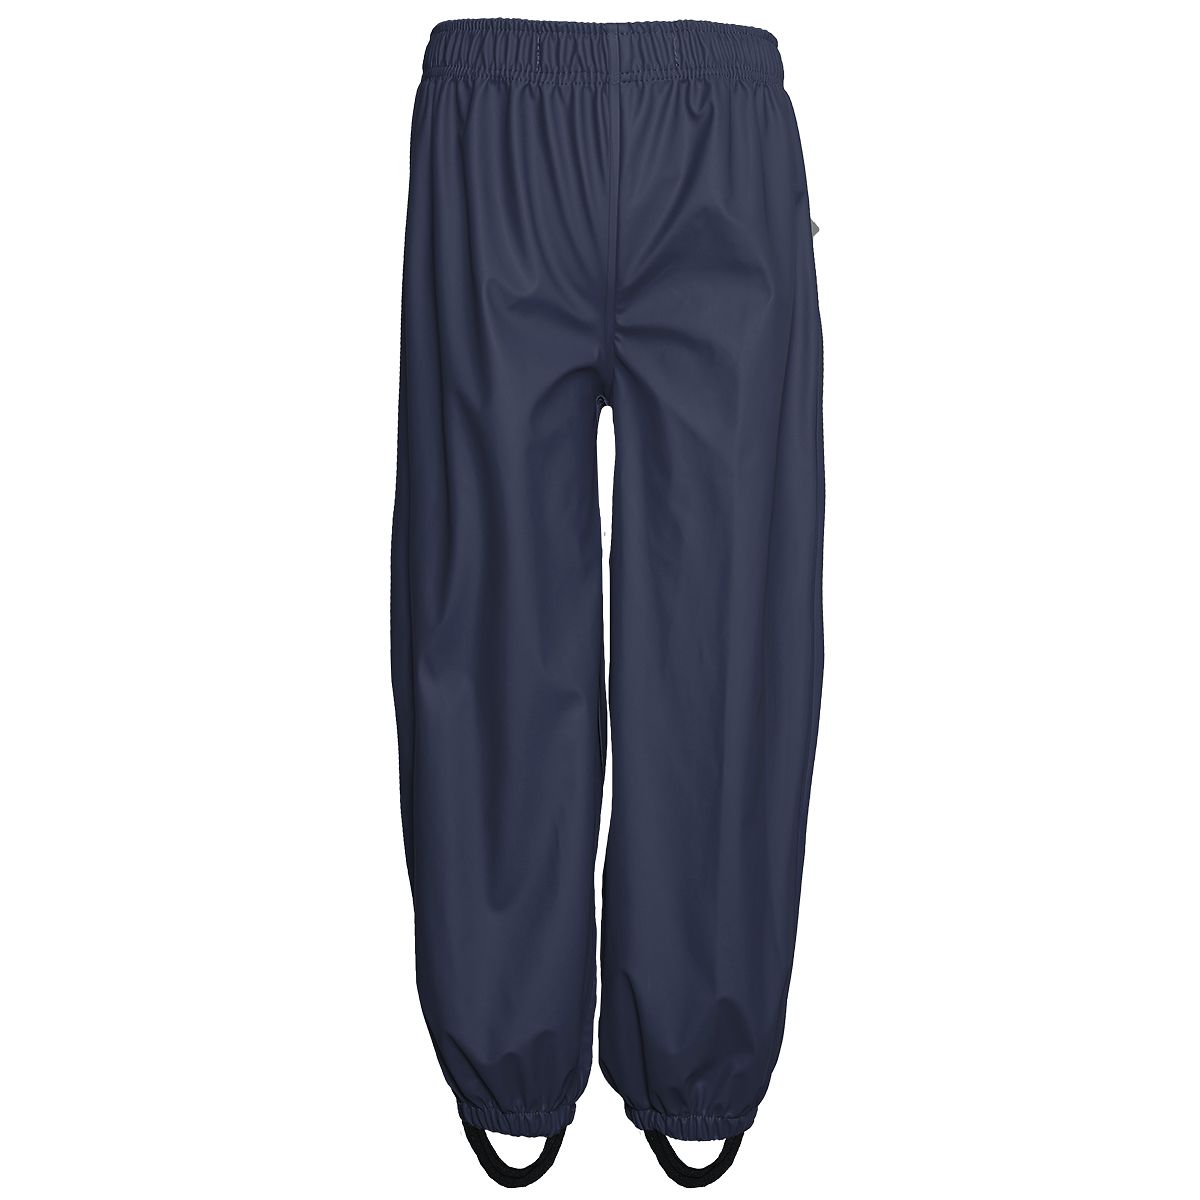 Jonathan rain pants, dark blue (110-152 cm)